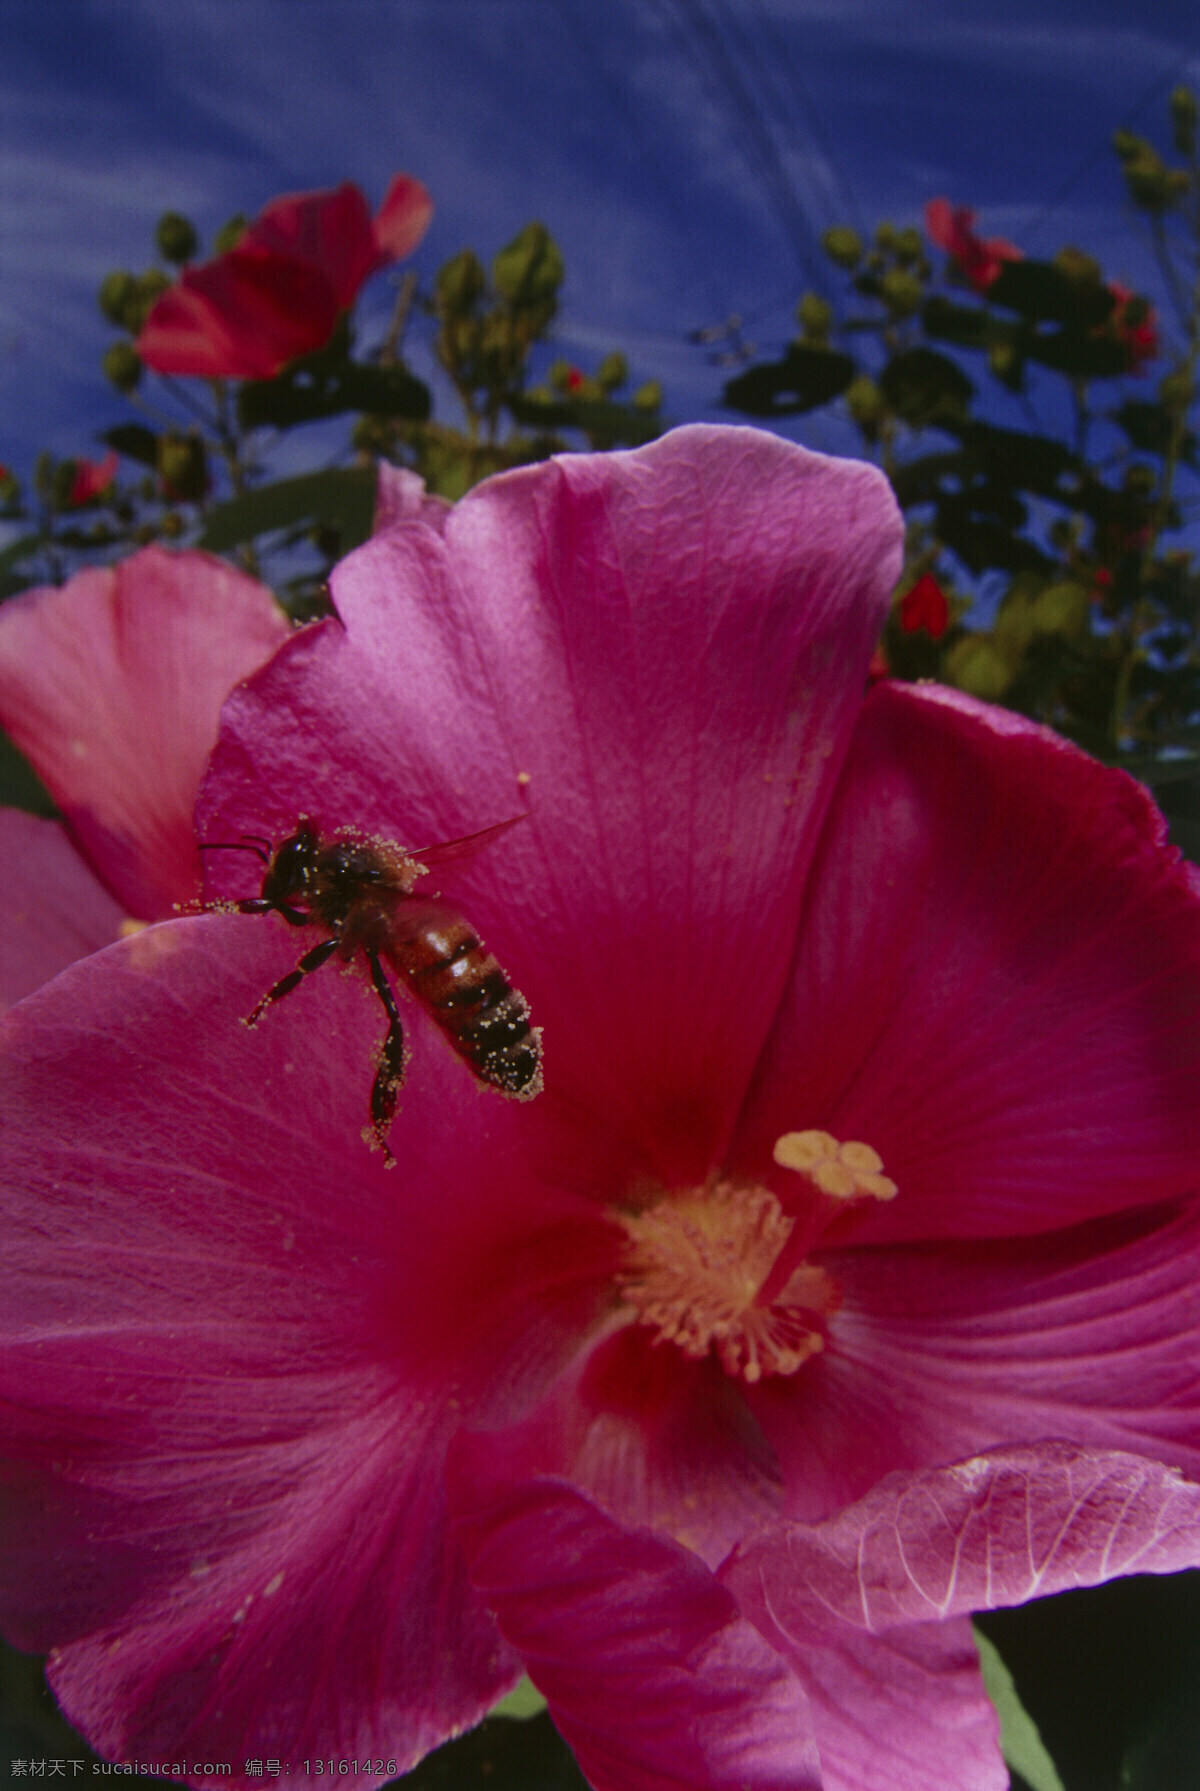 正在 采 蜜 蜜蜂 小蜜蜂 采蜜 美丽鲜花 花丛 花朵 动物世界 昆虫世界 花草树木 生态环境 生物世界 野外 自然界 自然生物 自然生态 高清图片 自然 植物 户外 红色